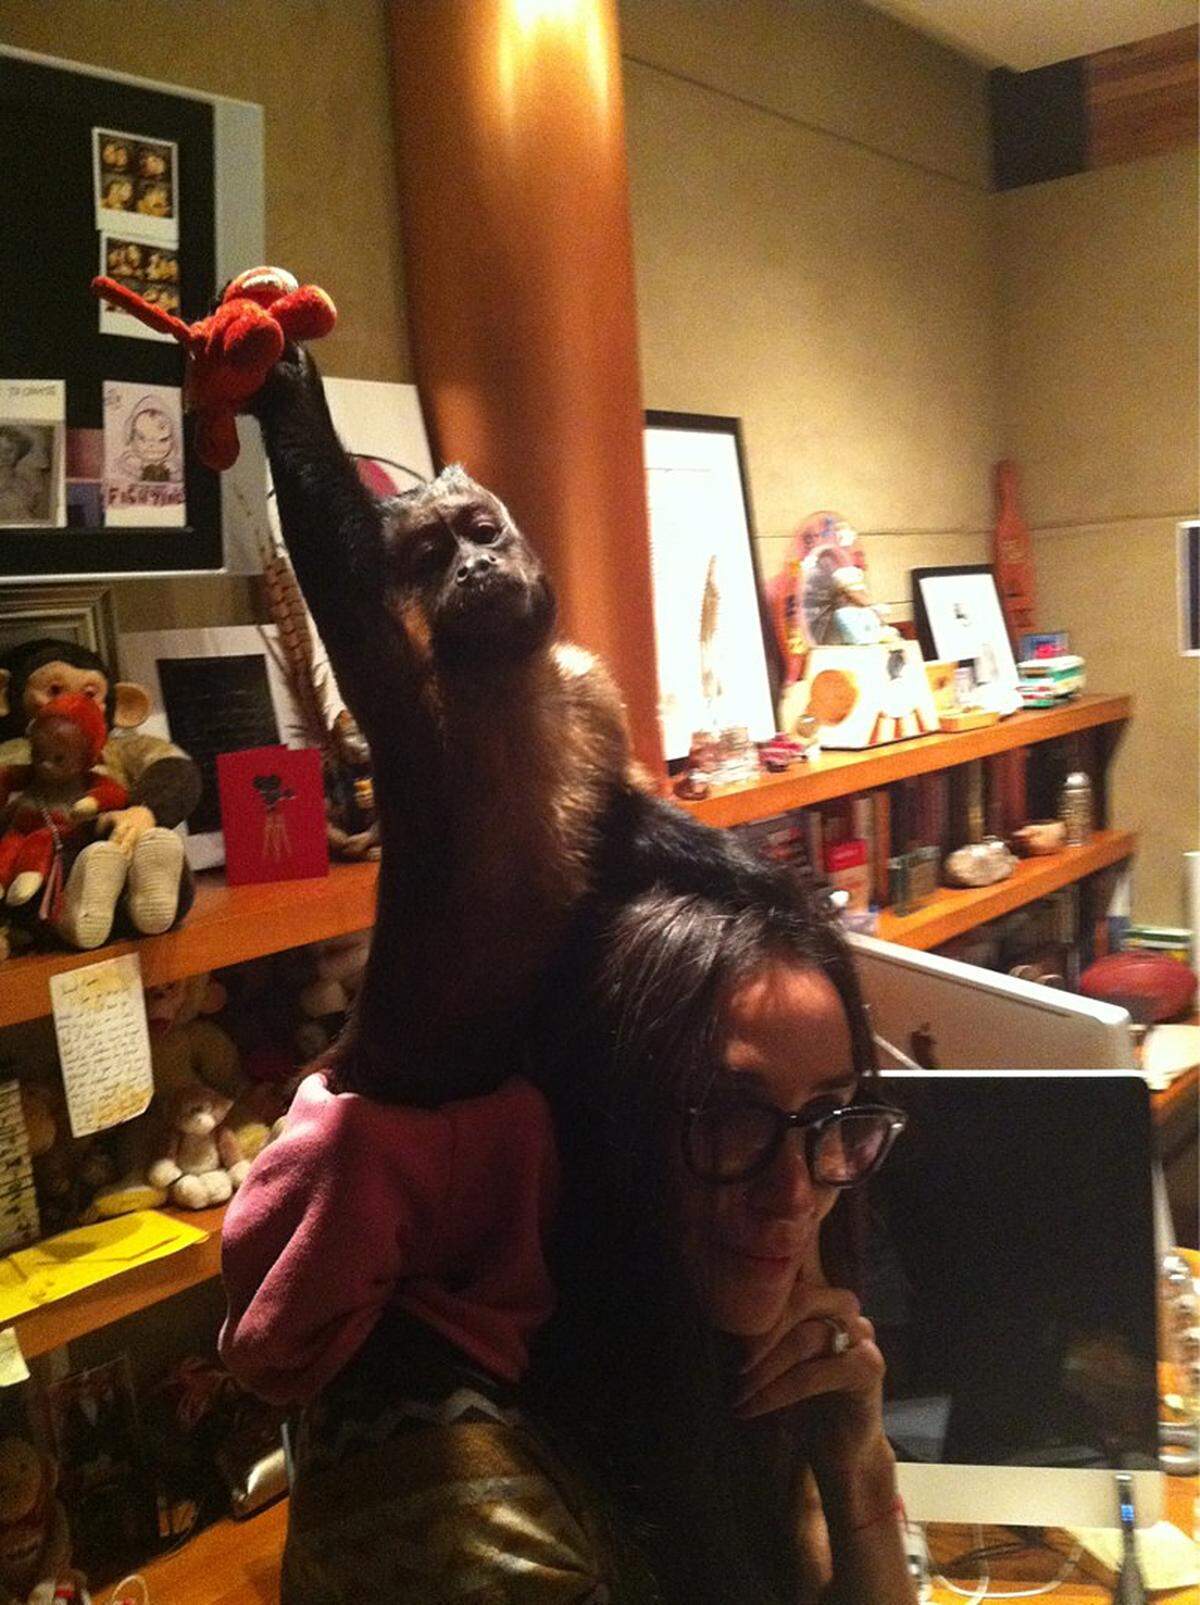 Nachdem Ashton Kutsher in letzter Zeit eher anderwärtig interessiert ist, wird Demi Moore vulgo Mrskutcher zu ihrem 49. Geburtstag von einem echten Affen besprungen. In den Krallen hält er Demis Glücksbringer, einen Plüschaffen namens Pursemonkey.